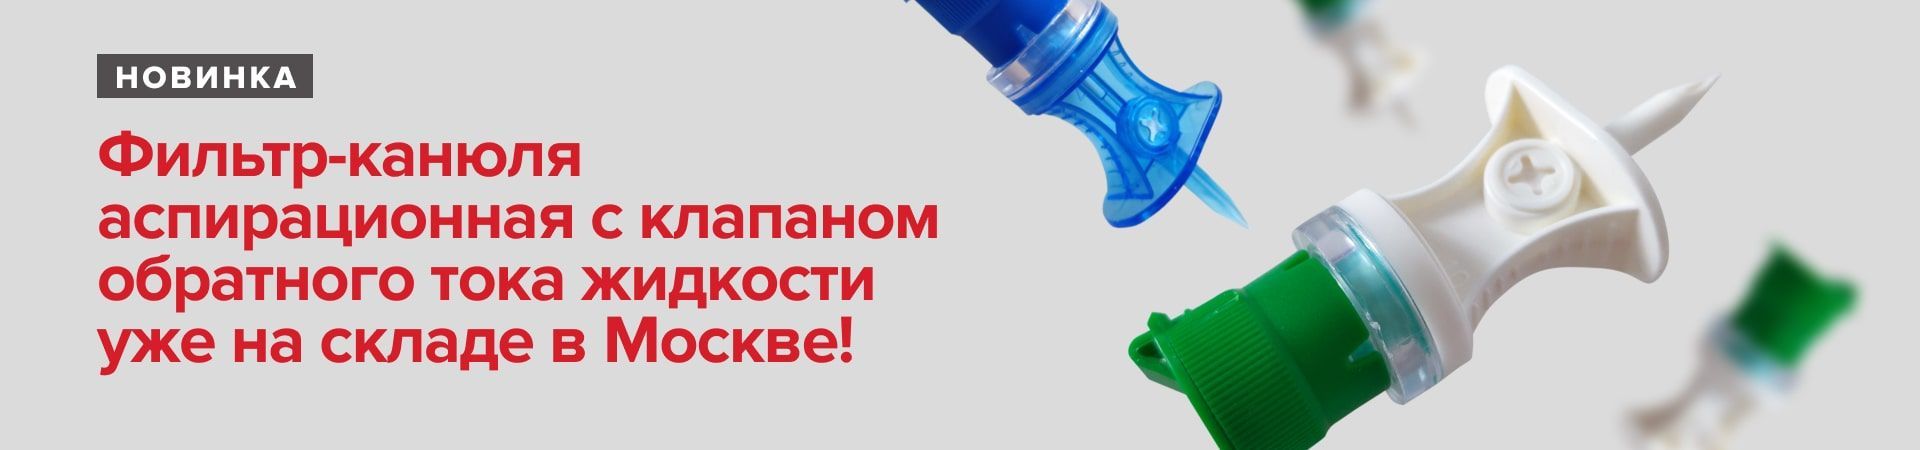 Новинка! Фильтр-канюля аспирационная с клапаном обратного тока жидкости уже на складе в Москве!